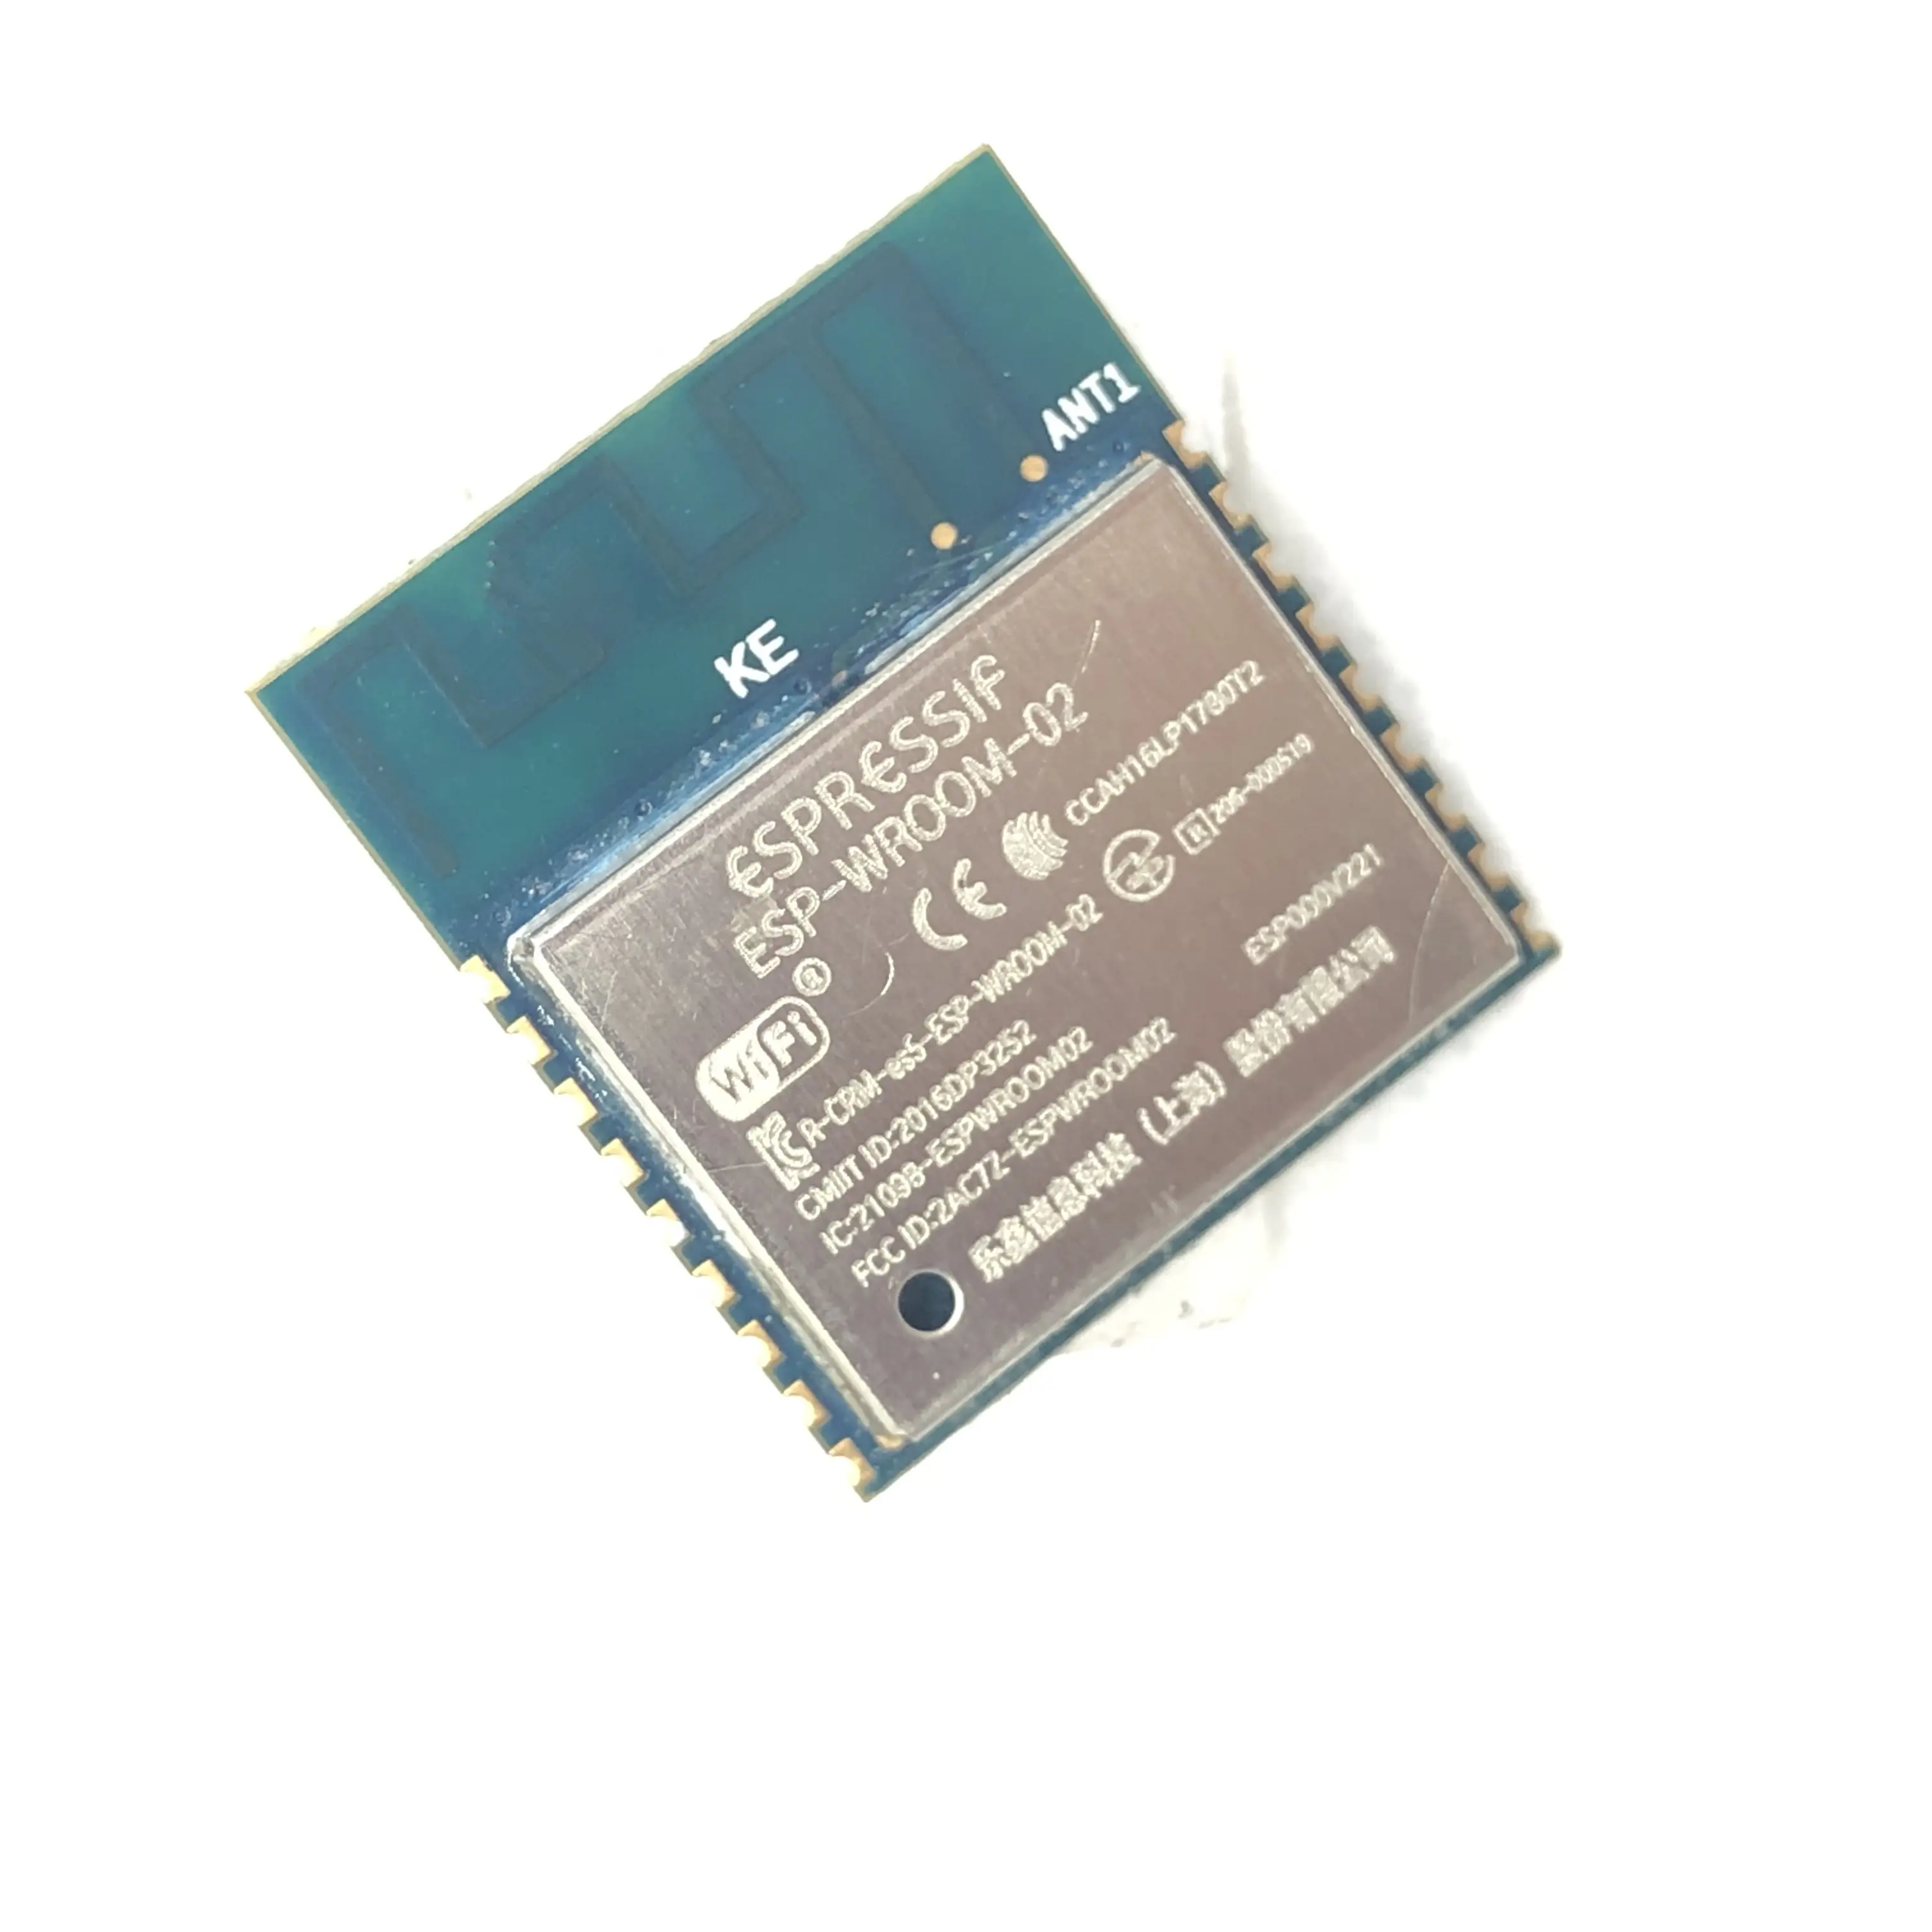 ESP-WROOM-02 Espressif 4MB modulo wifi in funzione esp8266 modulo wifi seriale con FCC CE RoHS per smart board iot dispositivo